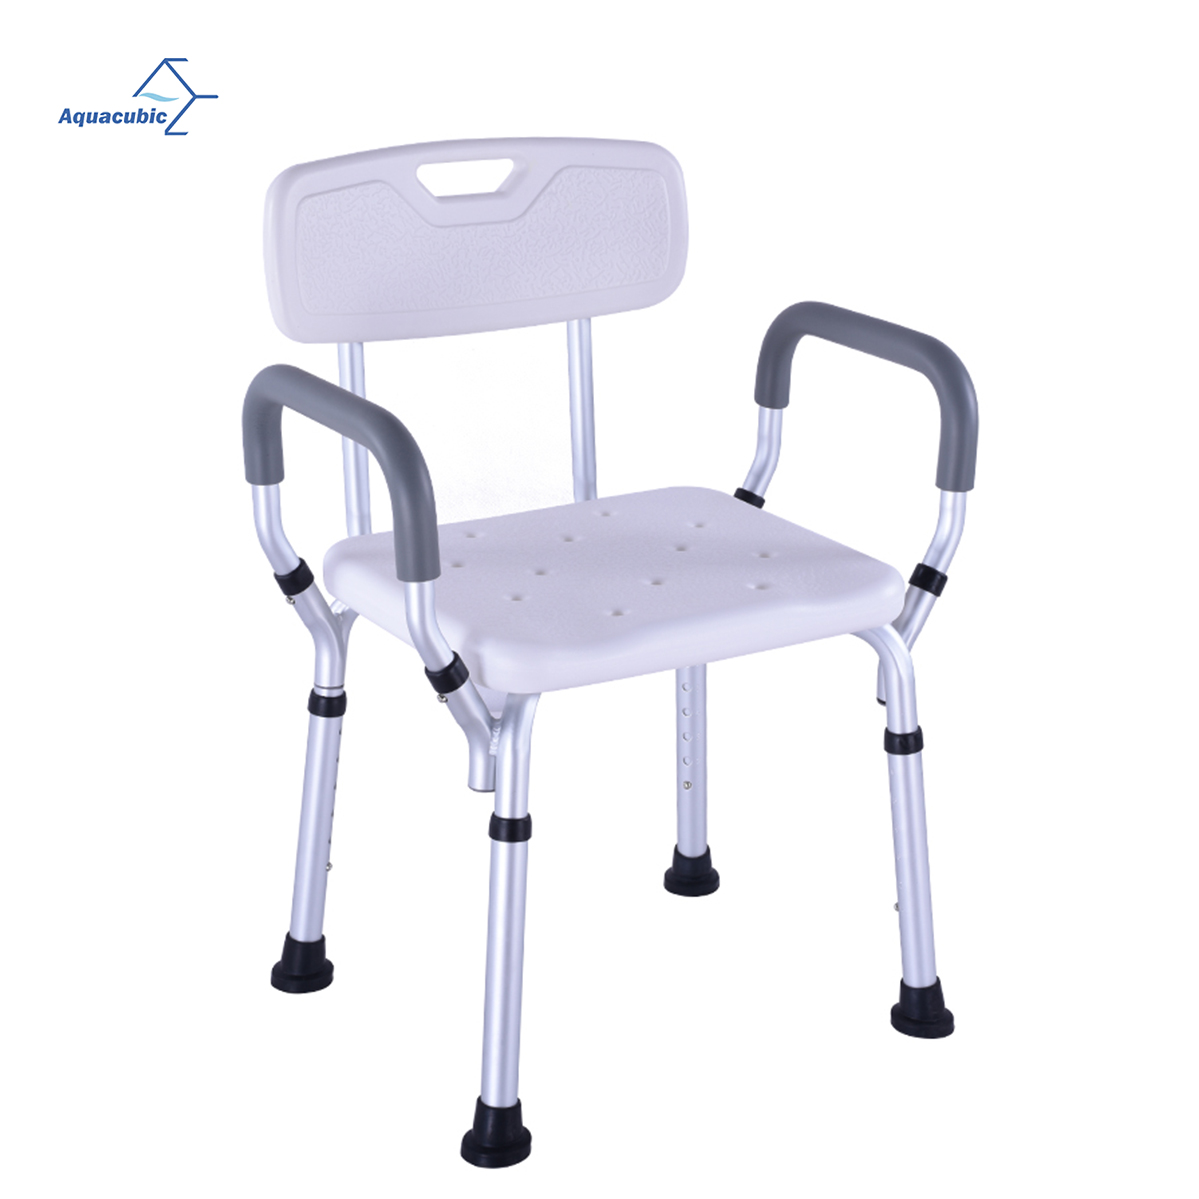 Medizinischer verstellbarer Duschsitz aus Aluminium, Sitzbank, Badehocker, Duschsitz mit Halterung